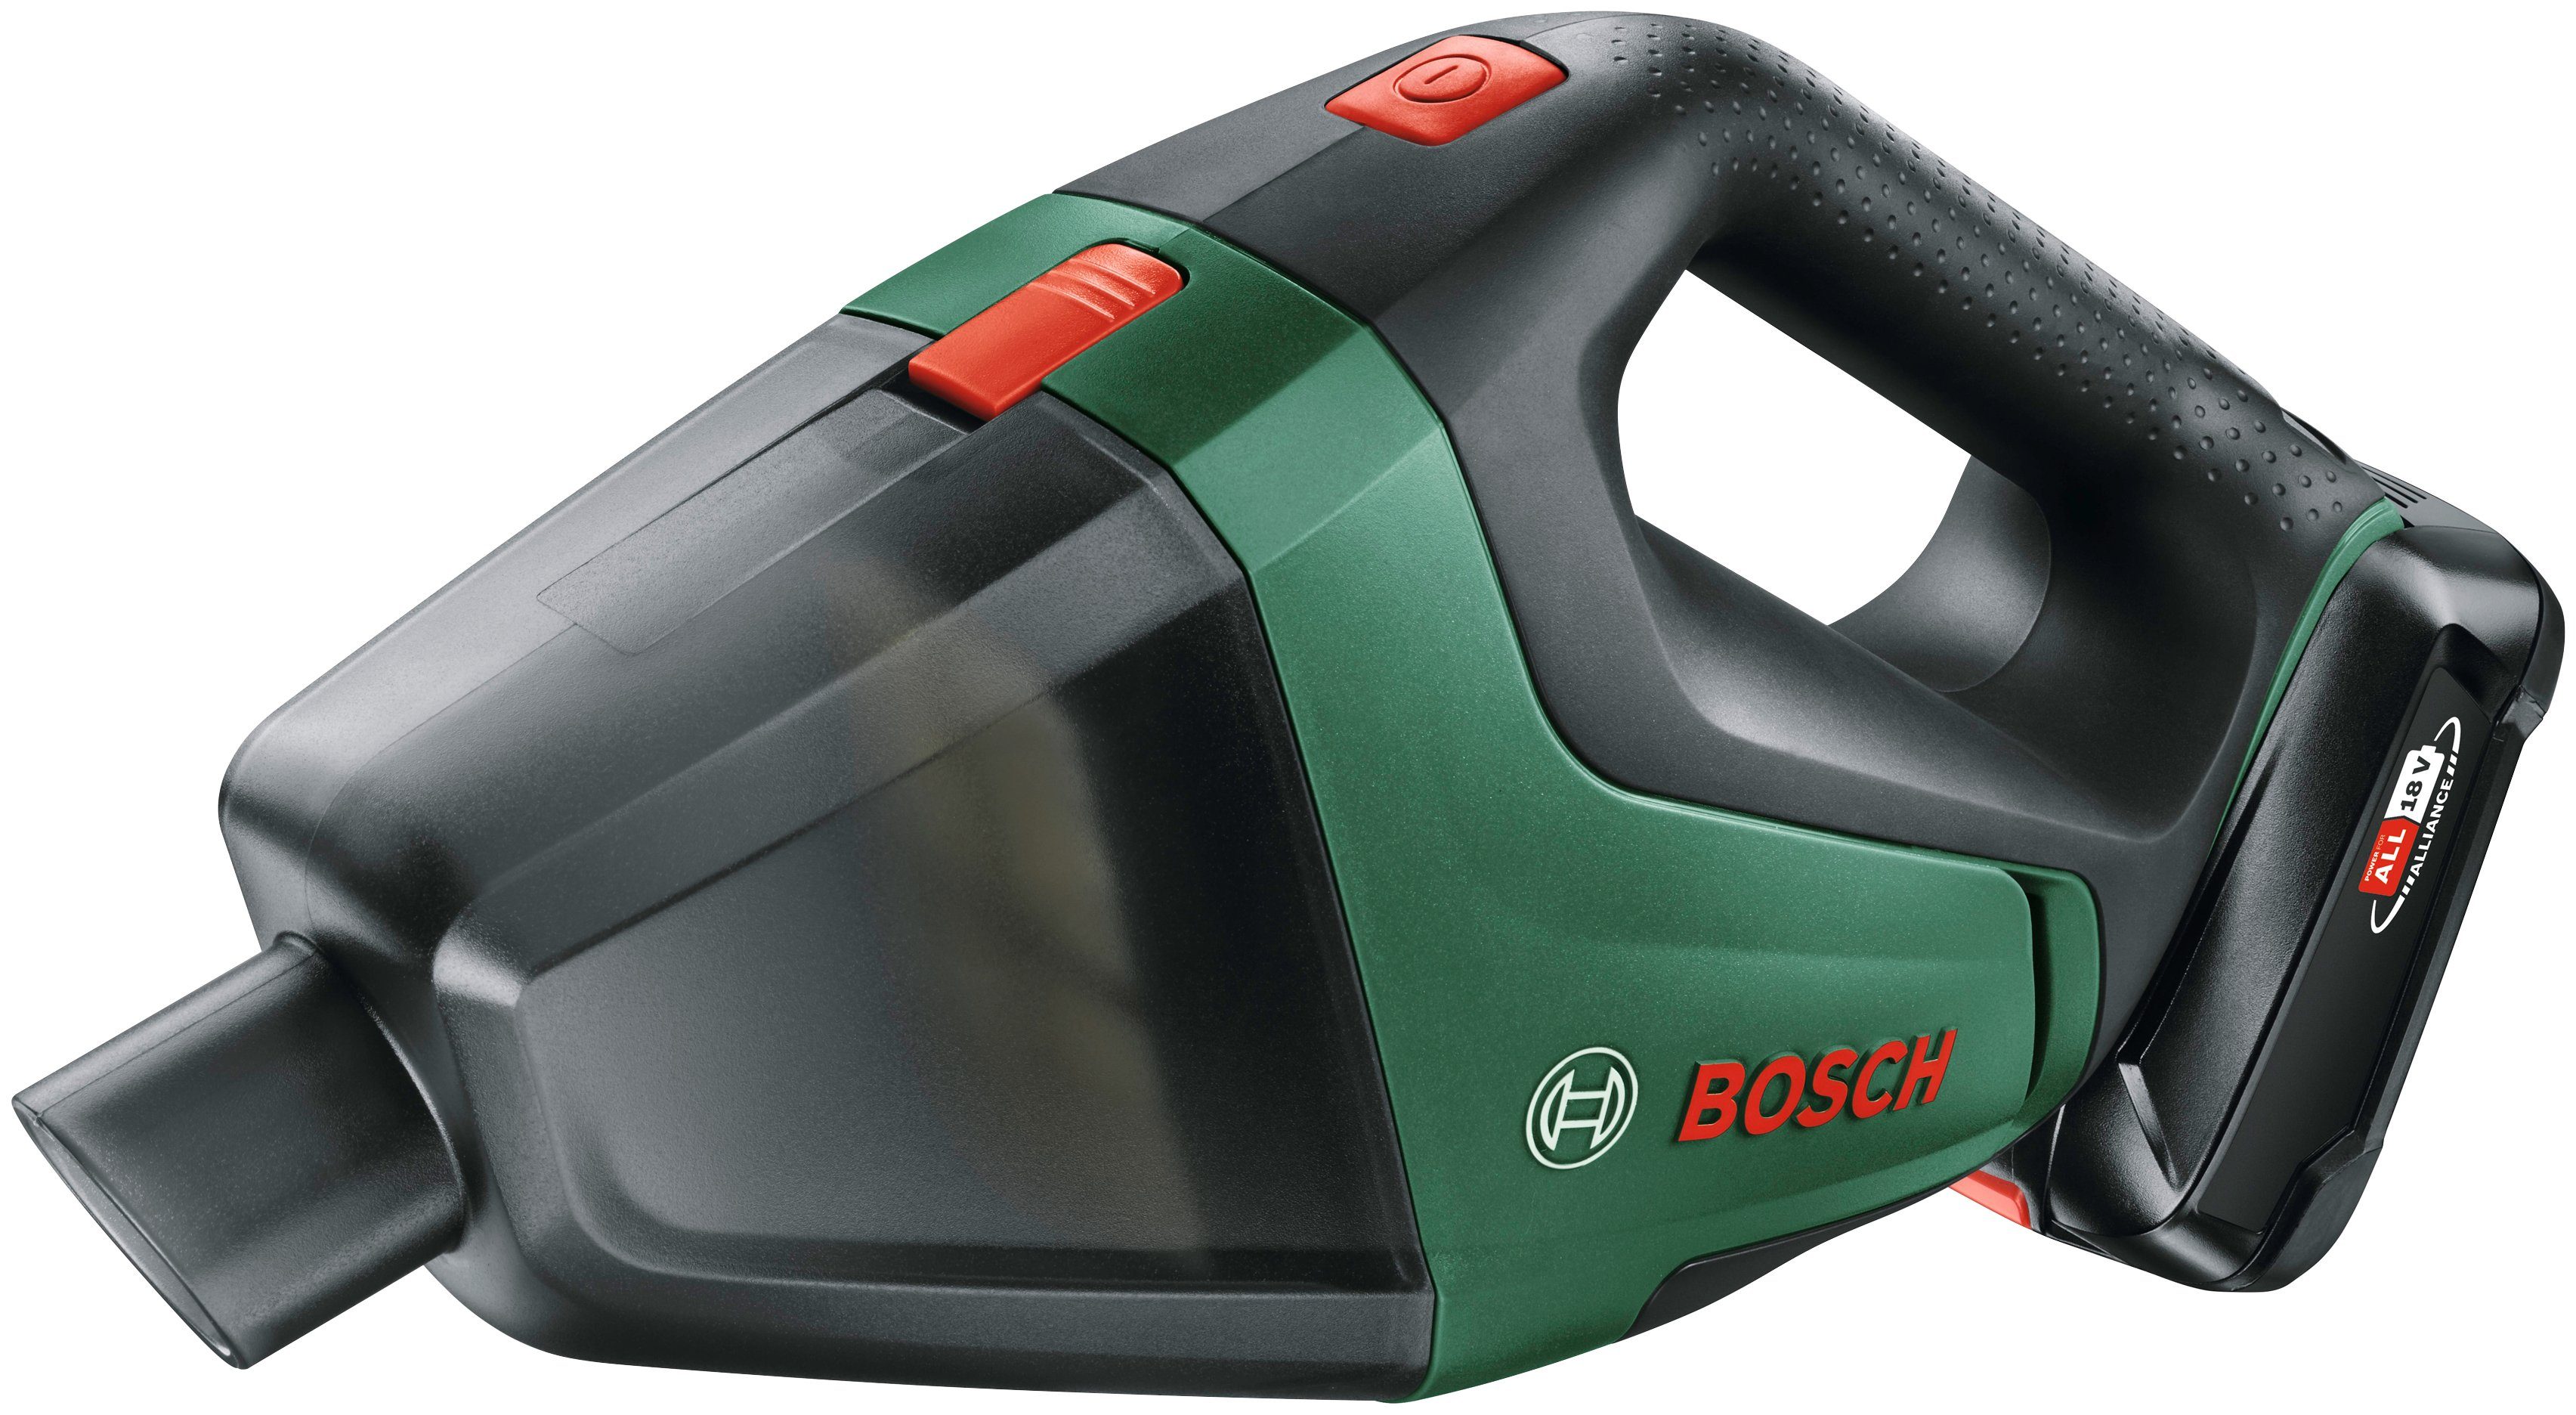 Bosch Home & Ladegerät, mm 18, Garden und Maße: UniversalVac inkl. Akku beutellos, 335x100x175 Akku-Handstaubsauger